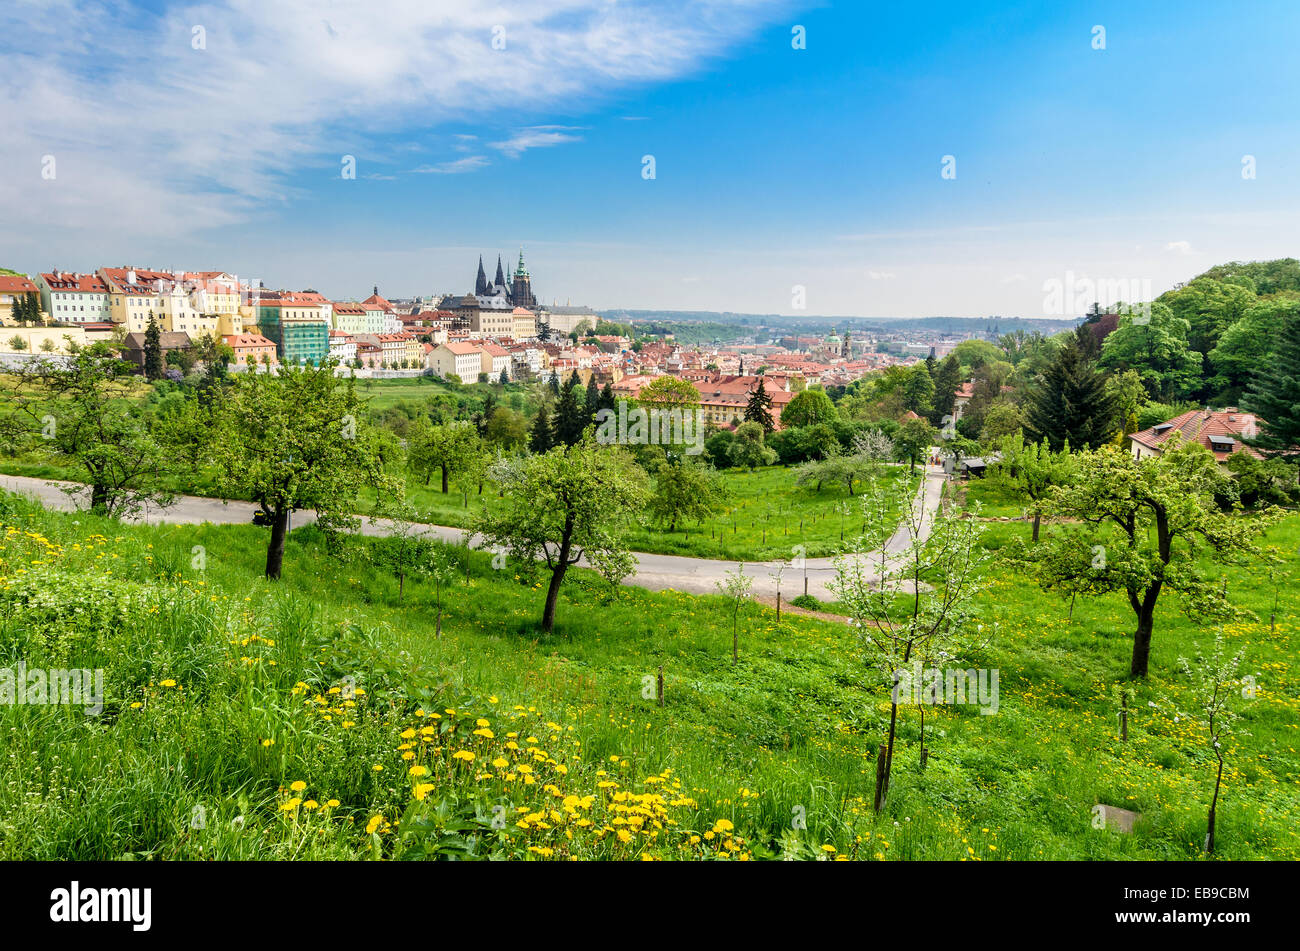 Vista panorámica de la catedral de San Vito de Praga y el Castillo de Praga, República Checa. Foto de stock